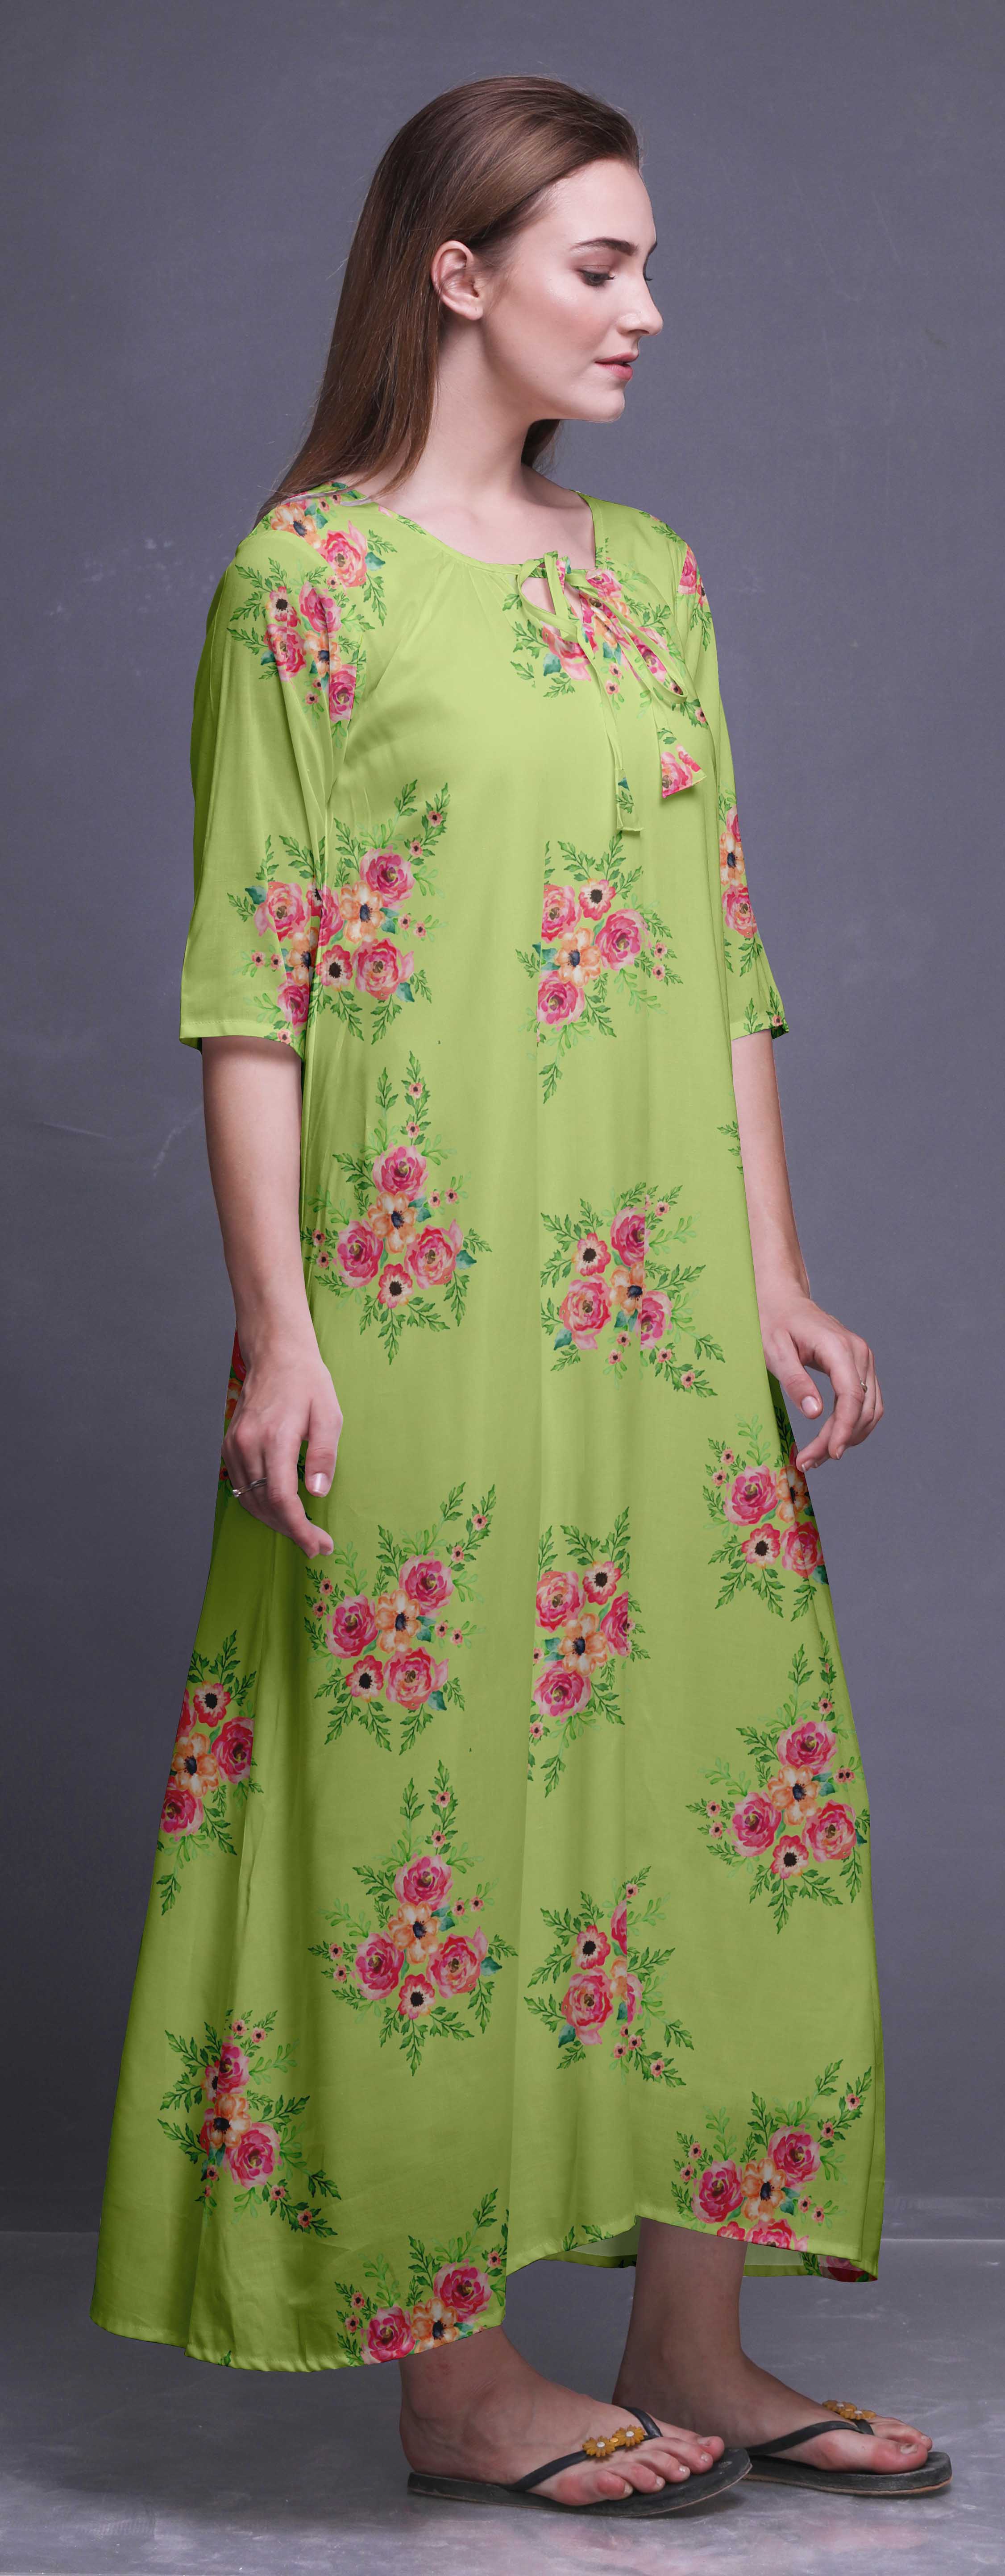 Bimba Floral Women Long Maxi Nightgown Rayon Nightwear Loose Sleepwear ...